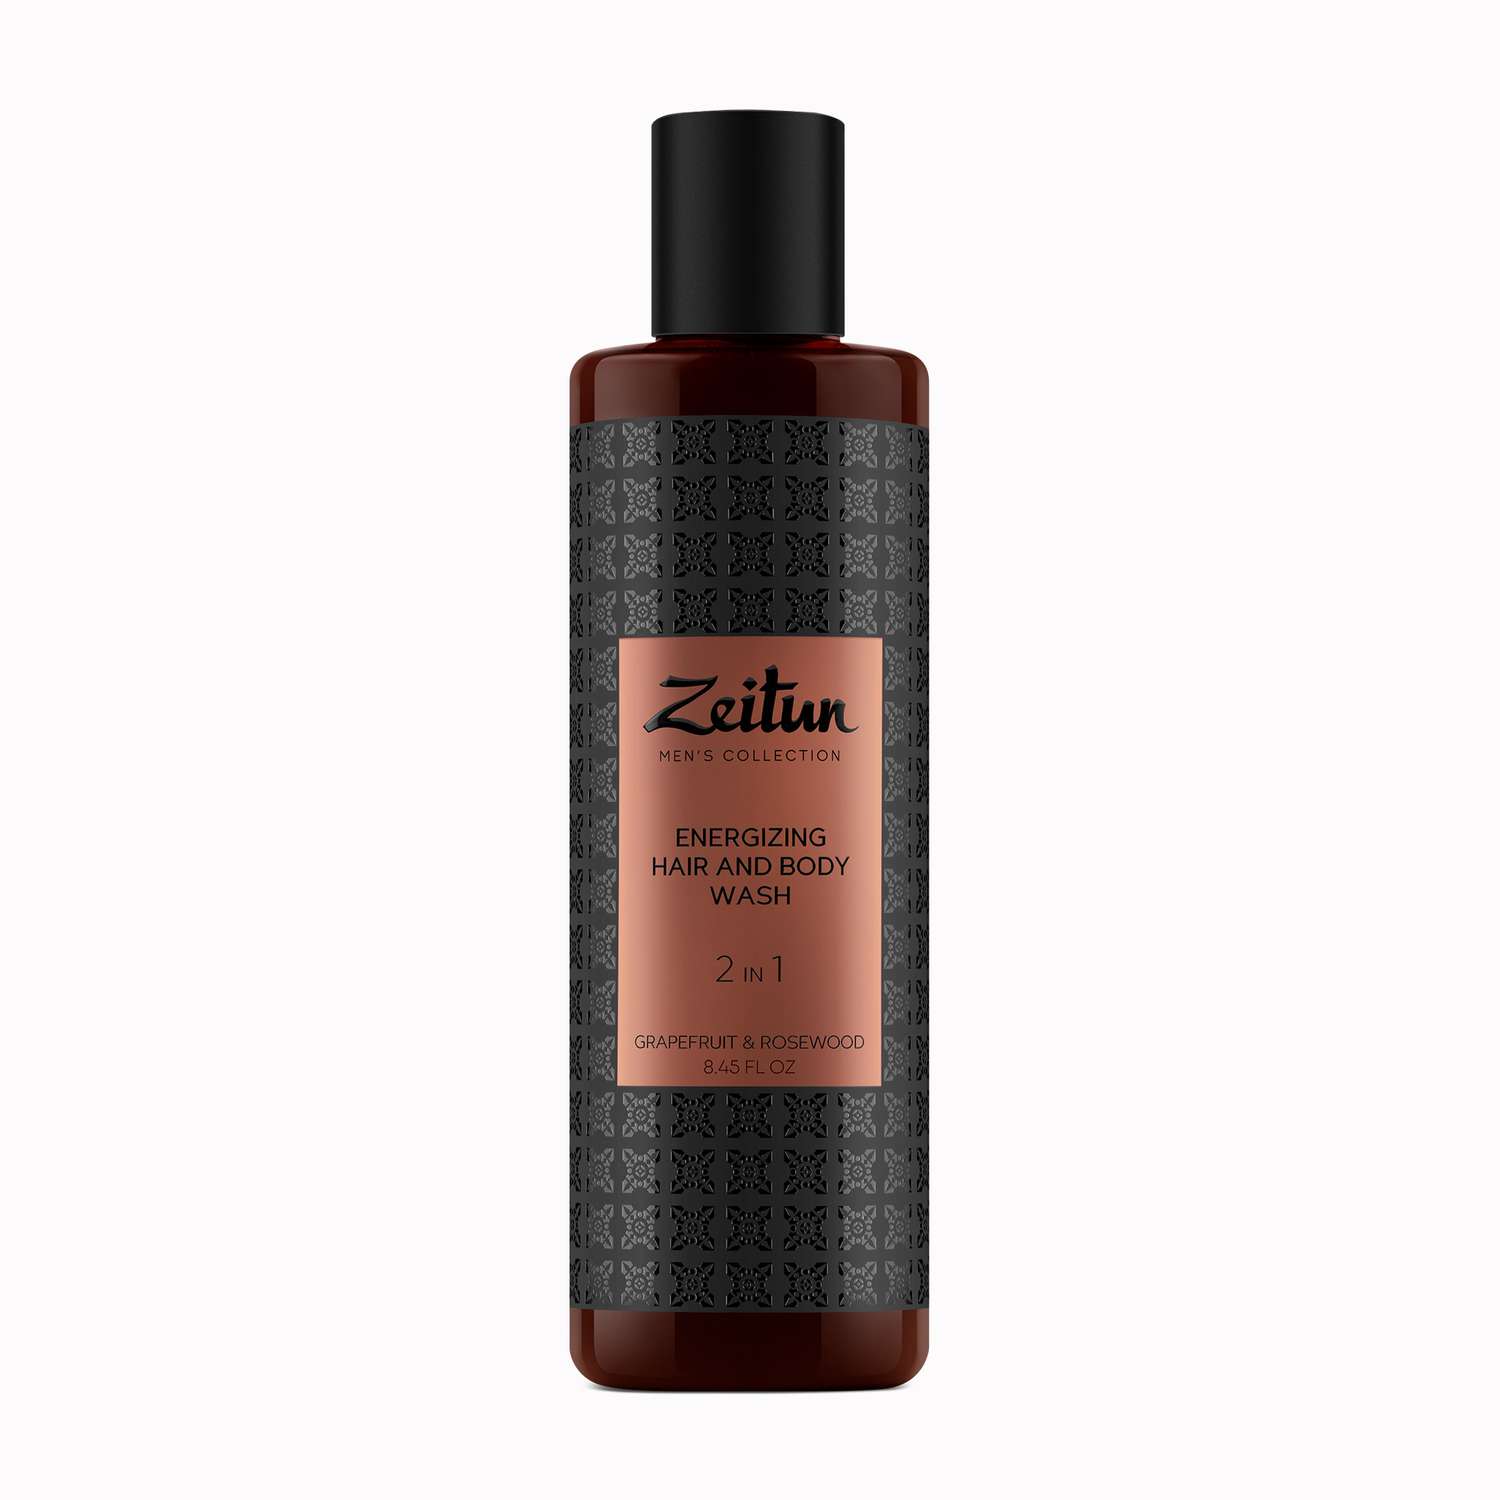 Мужской шампунь и гель 2 в 1 Zeitun от перхоти для всех типов волос увлажняющий с маслом грейпфрута и бергамотом 250 мл - фото 9